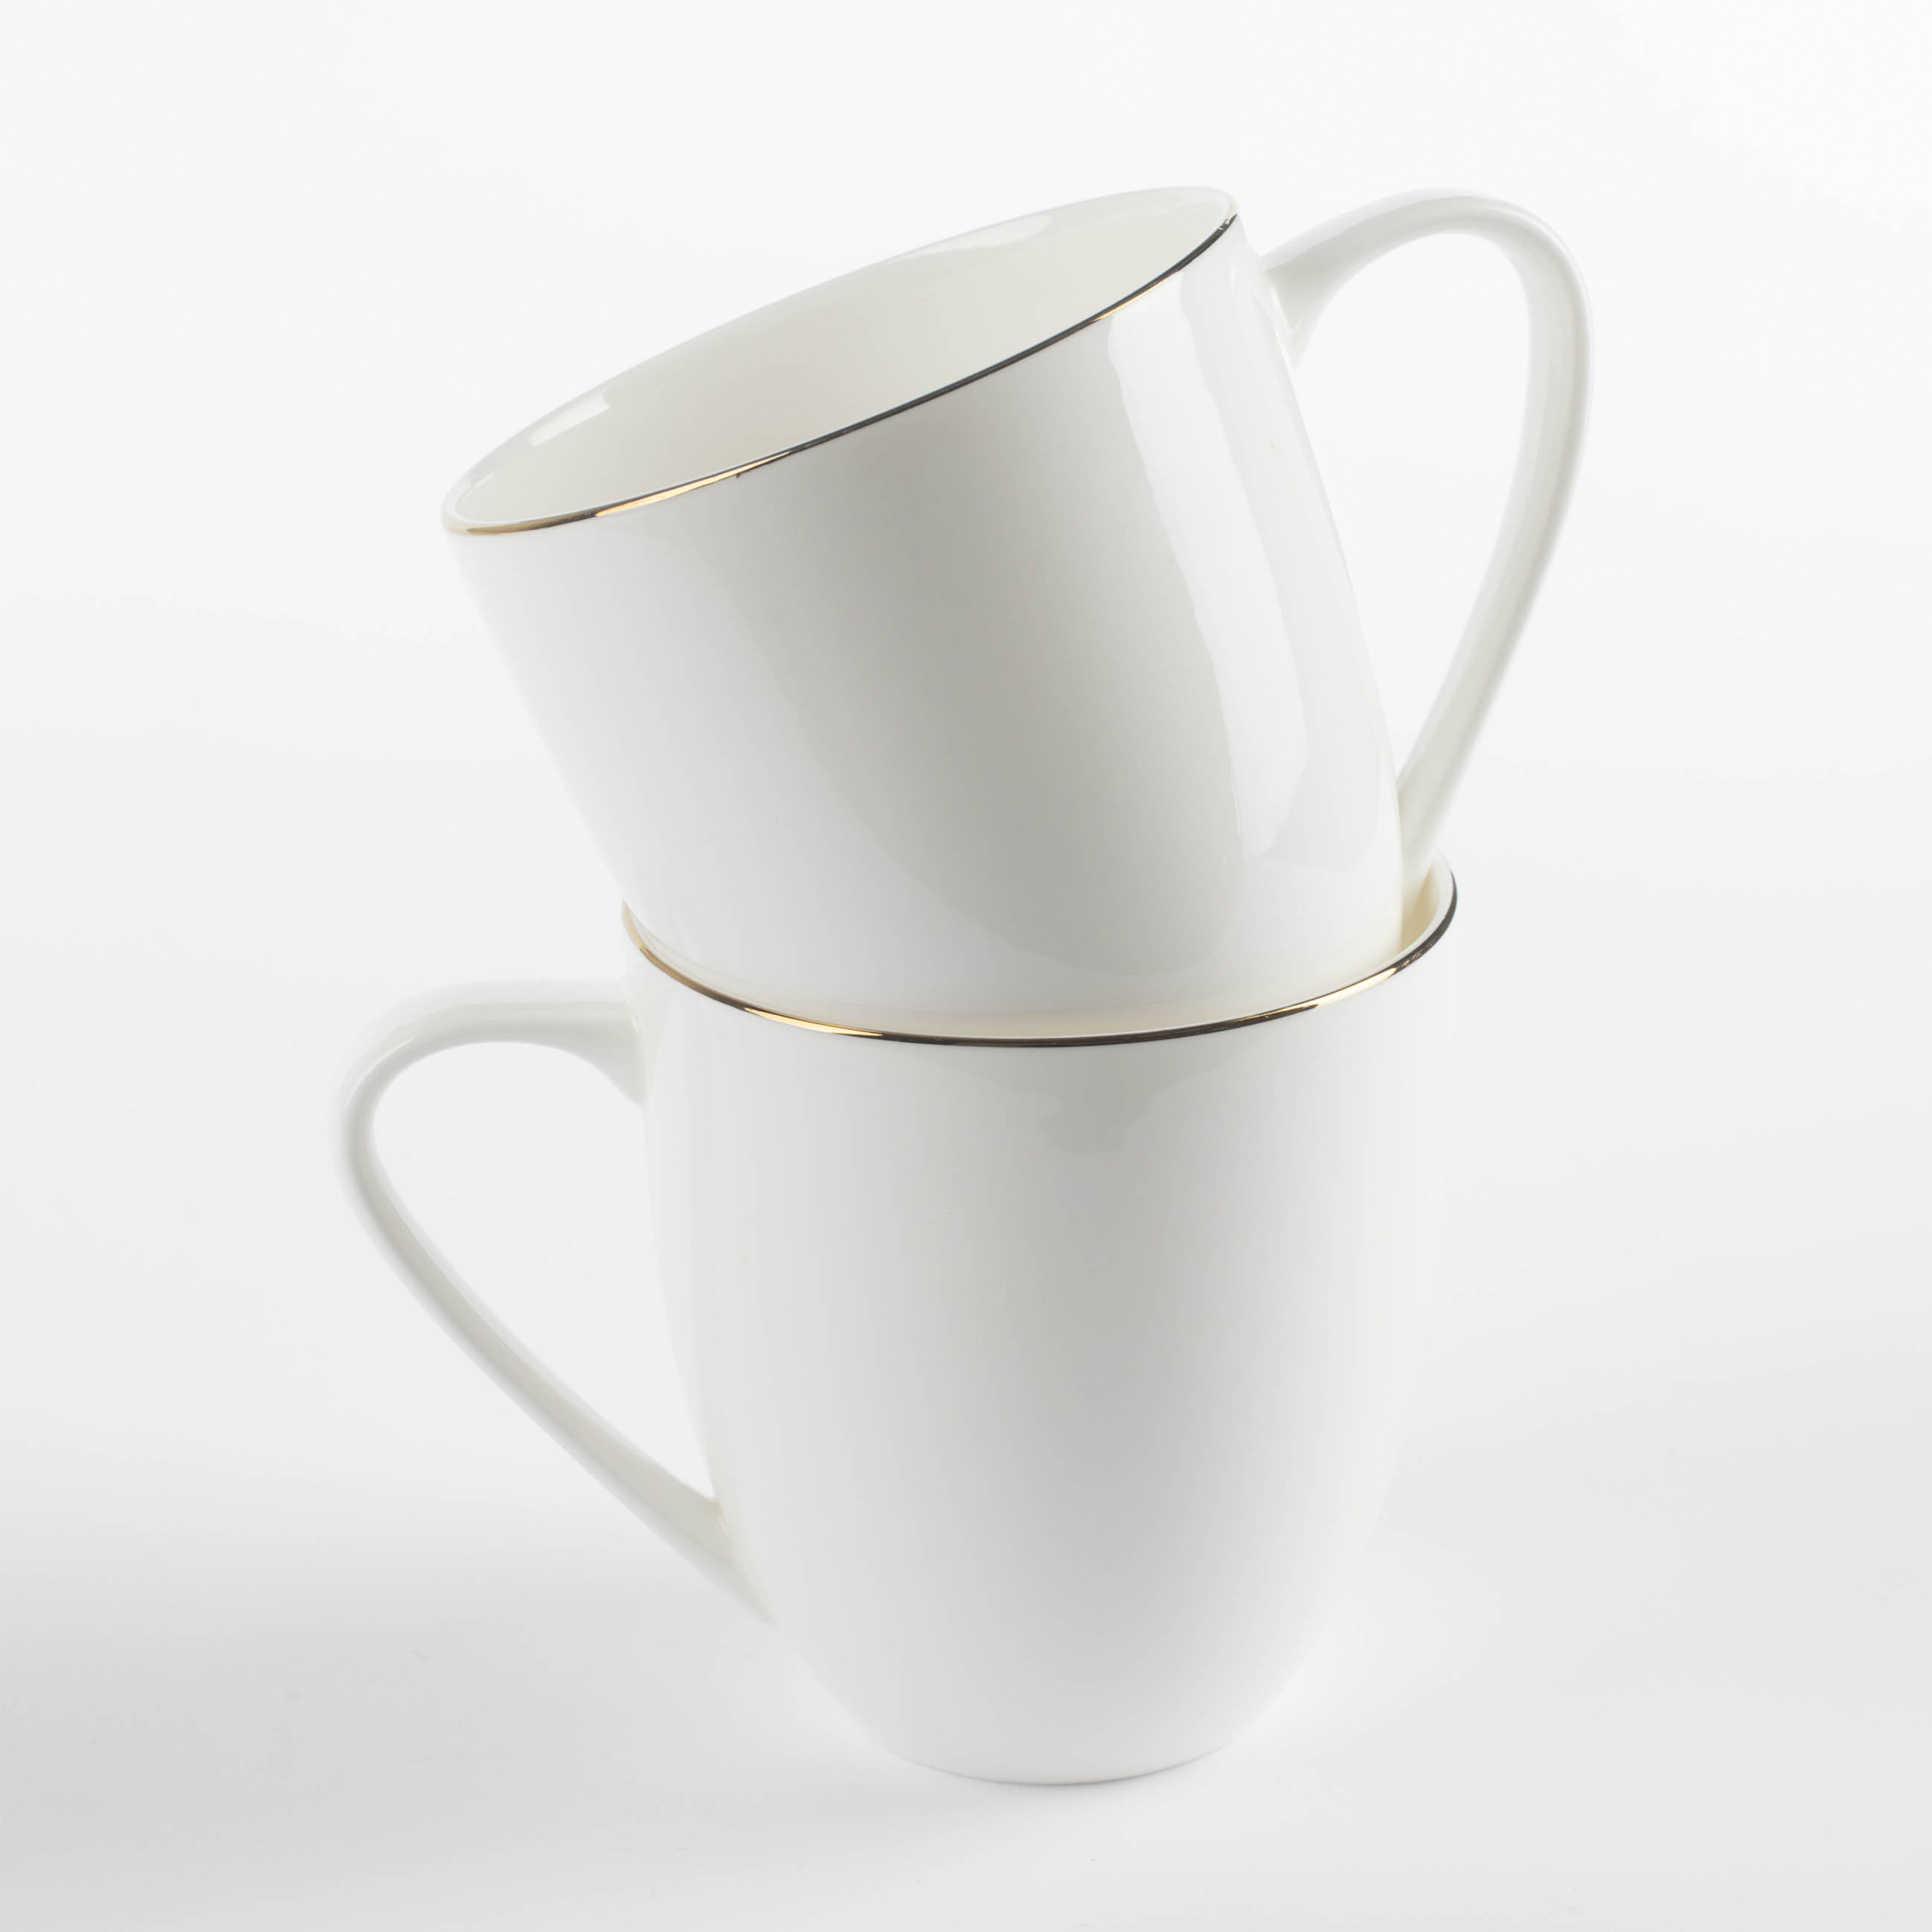 Mug, 450 ml, 2 pcs, porcelain F, white, Ideal gold изображение № 2